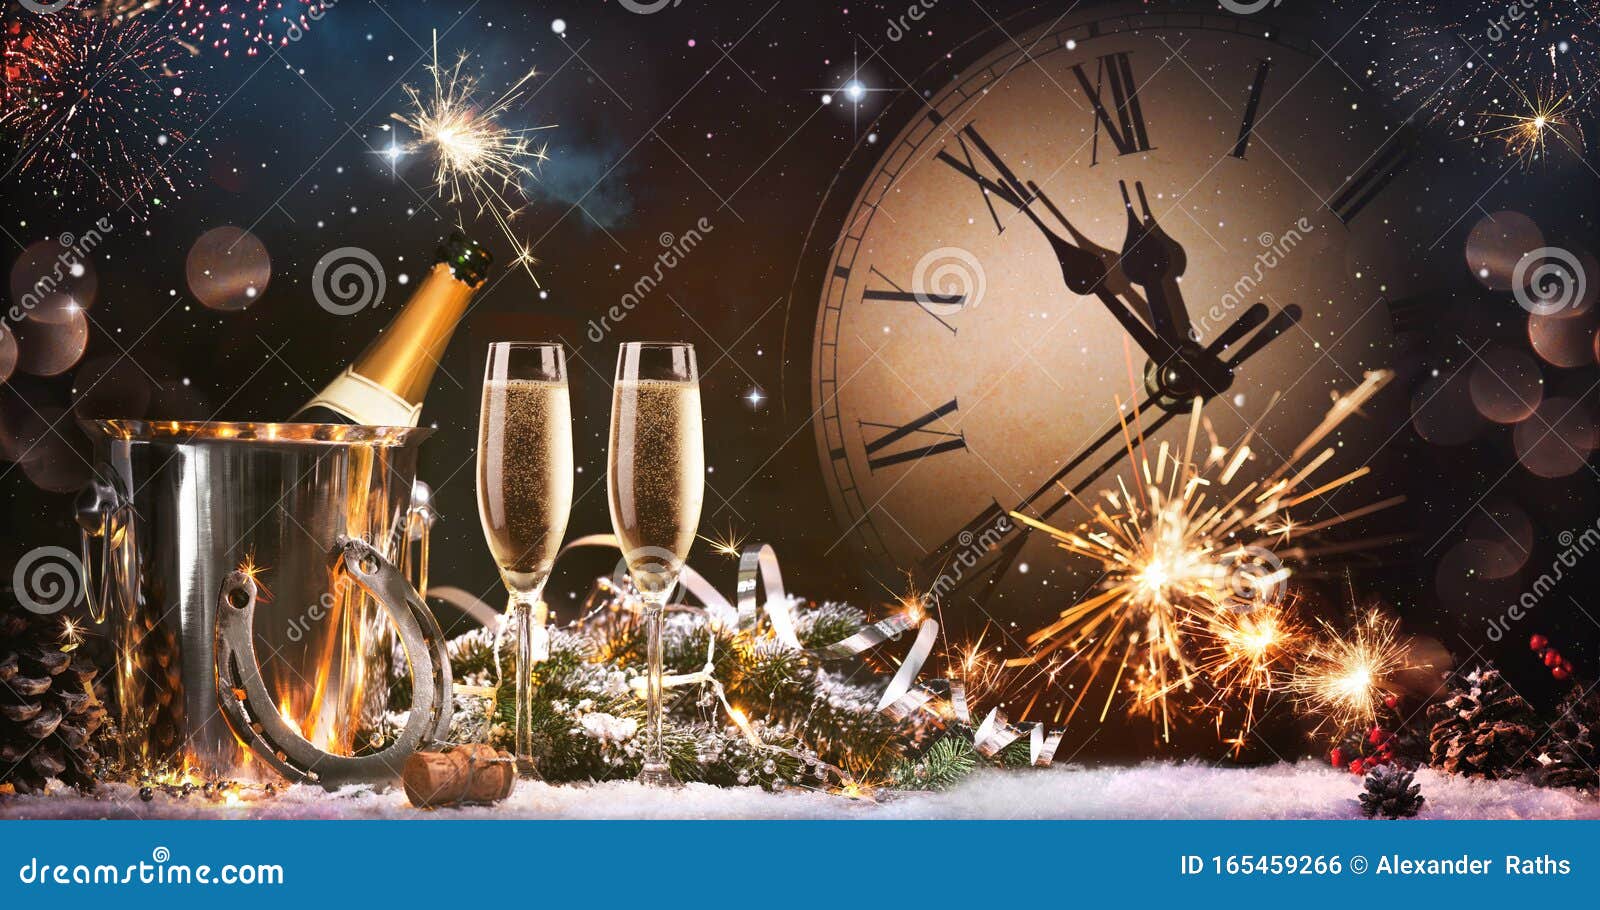 New Years Eve Celebration Background Stock Photo - Image of ...